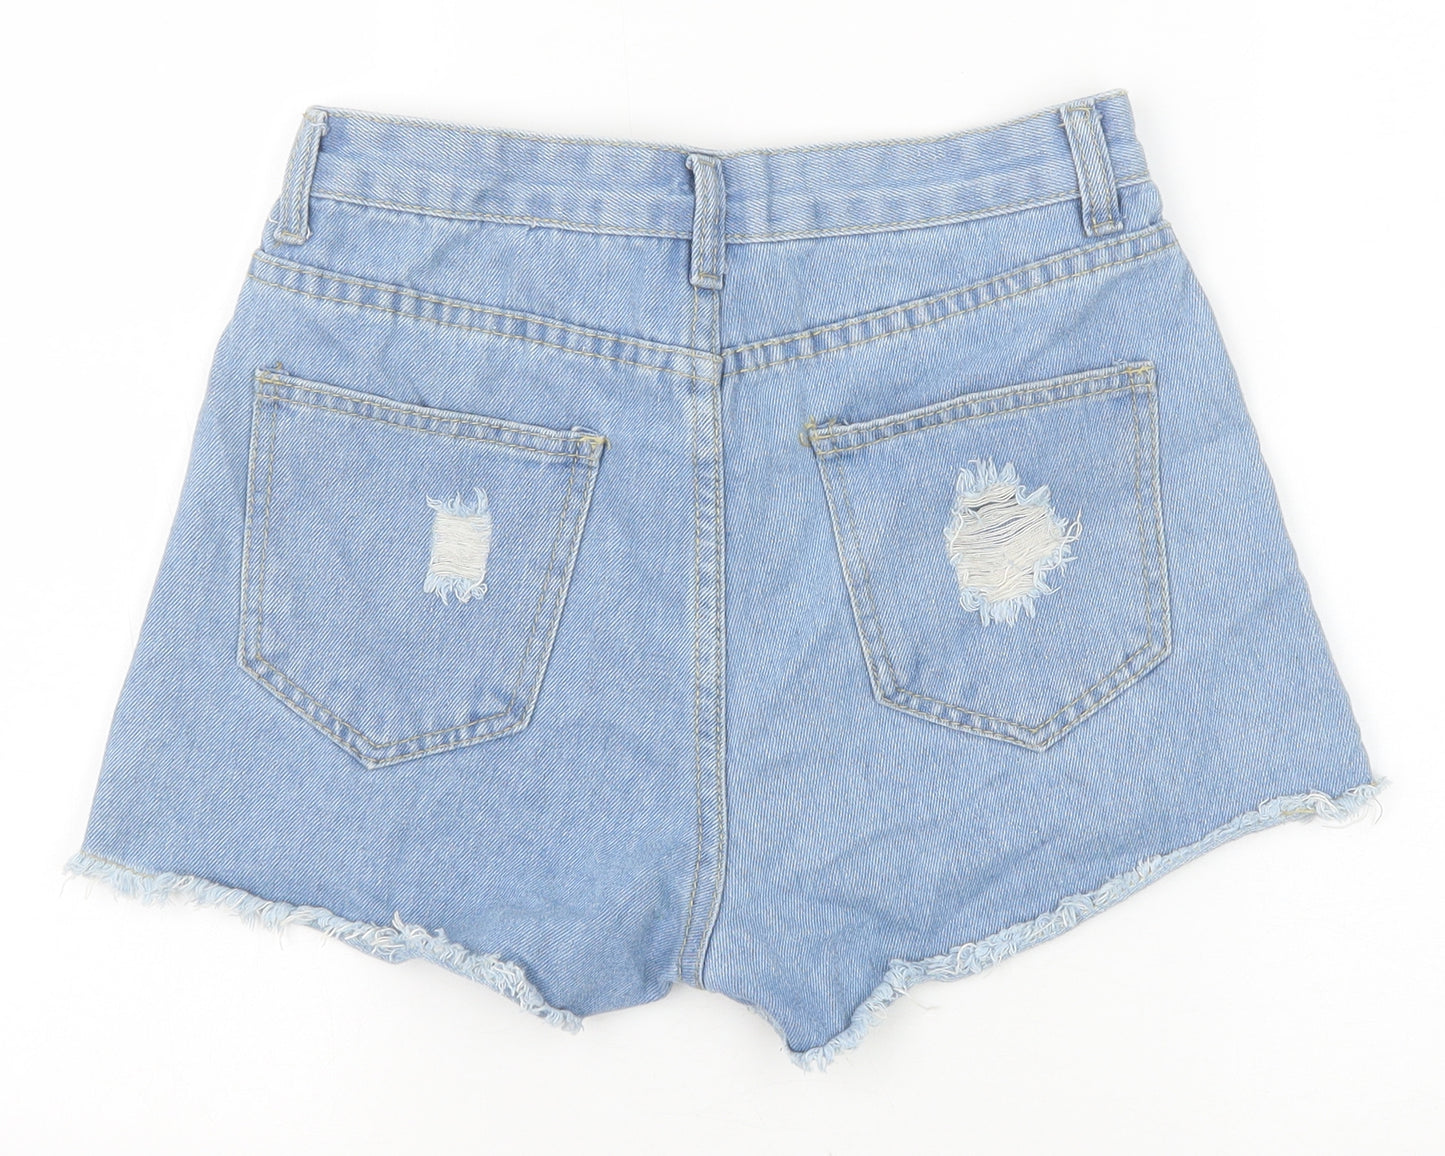 Preworn Womens Blue Cotton Cut-Off Shorts Size XS Regular Zip